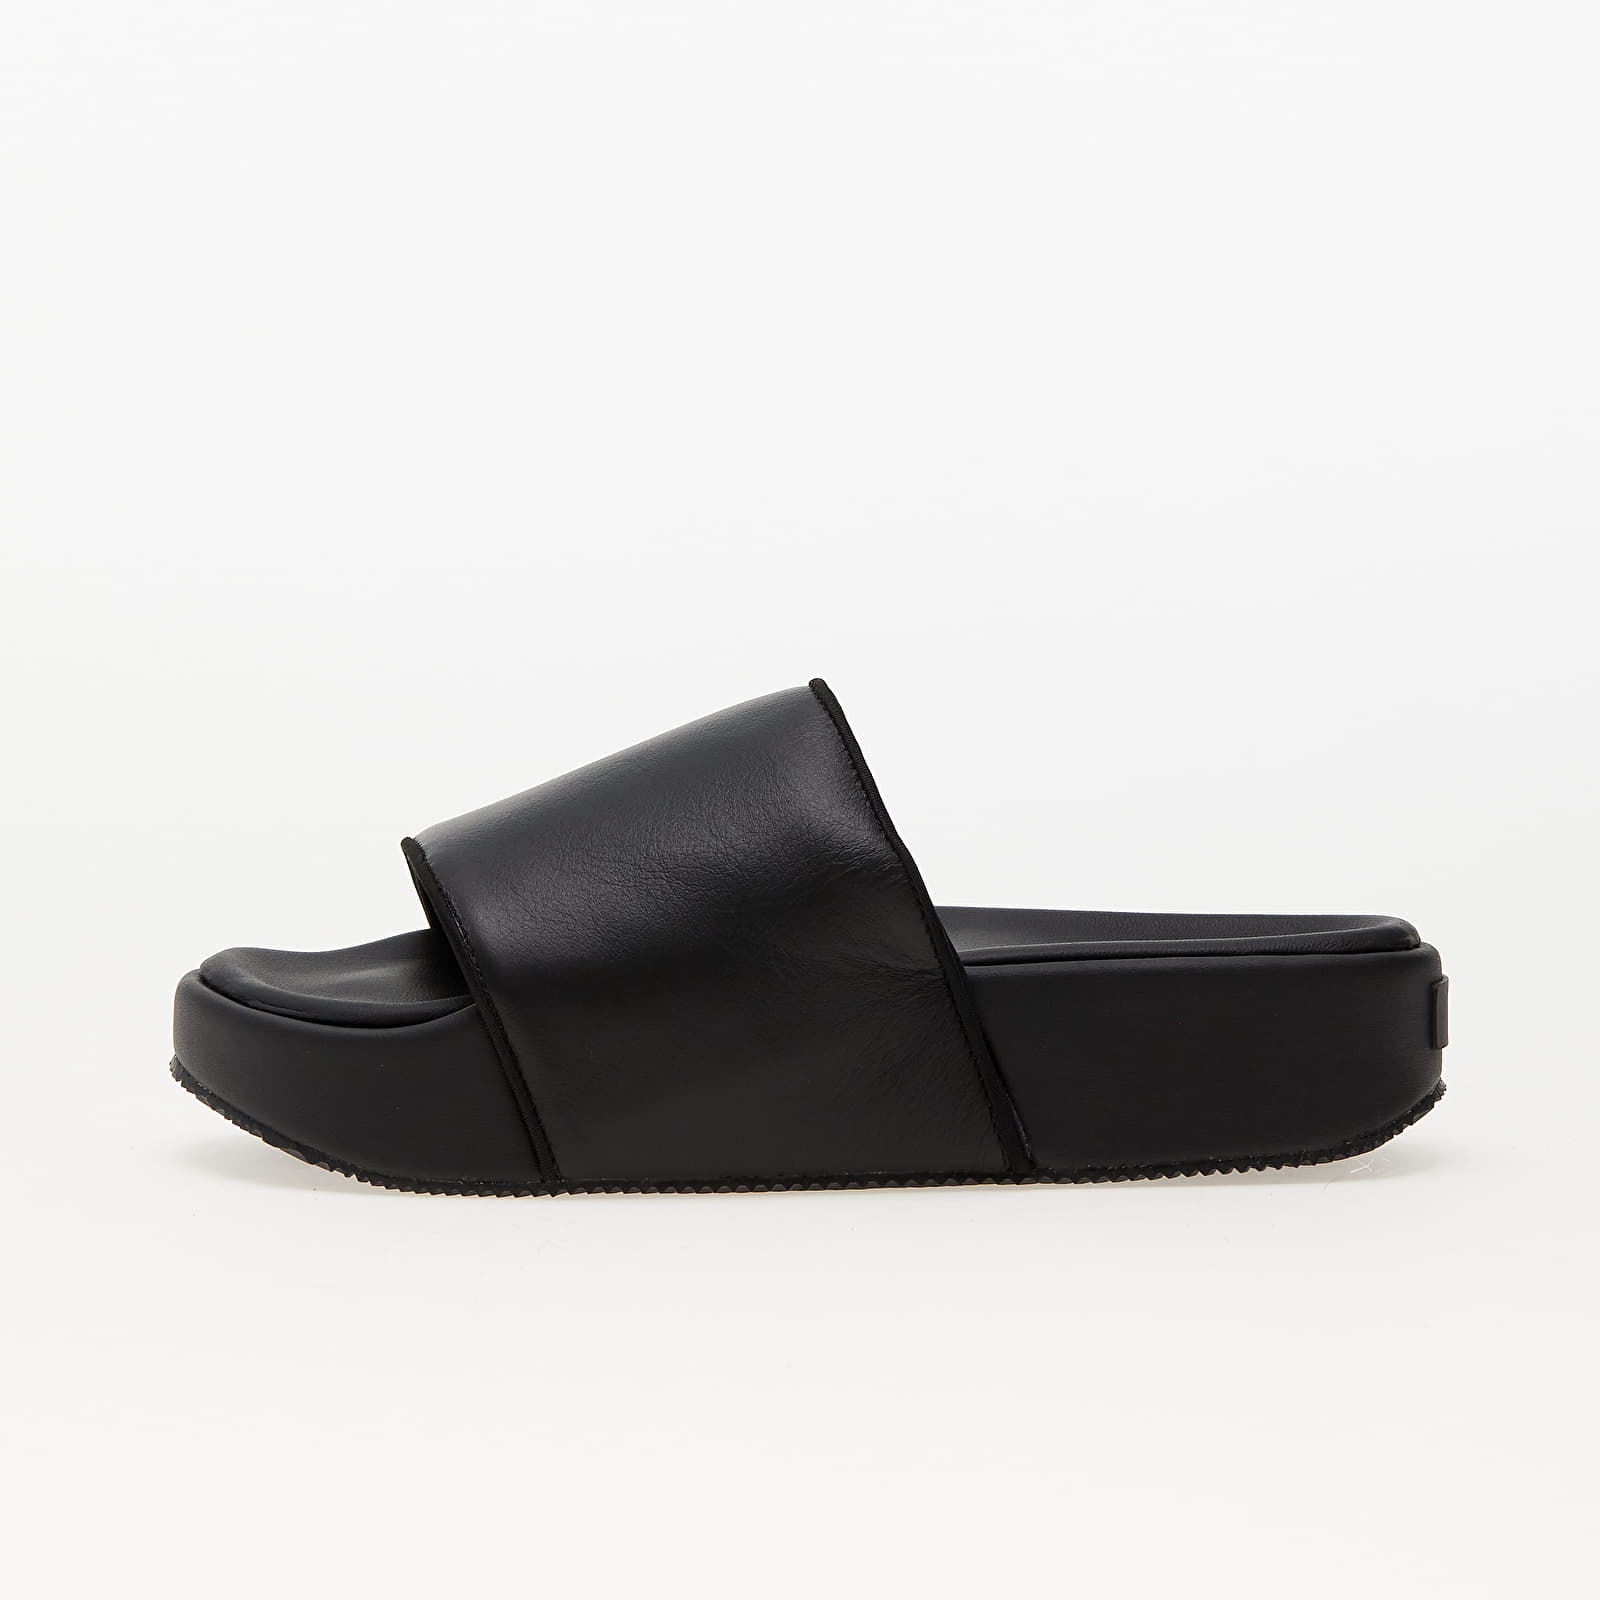 Men's shoes Y-3 Slide Black/ Black/ Black